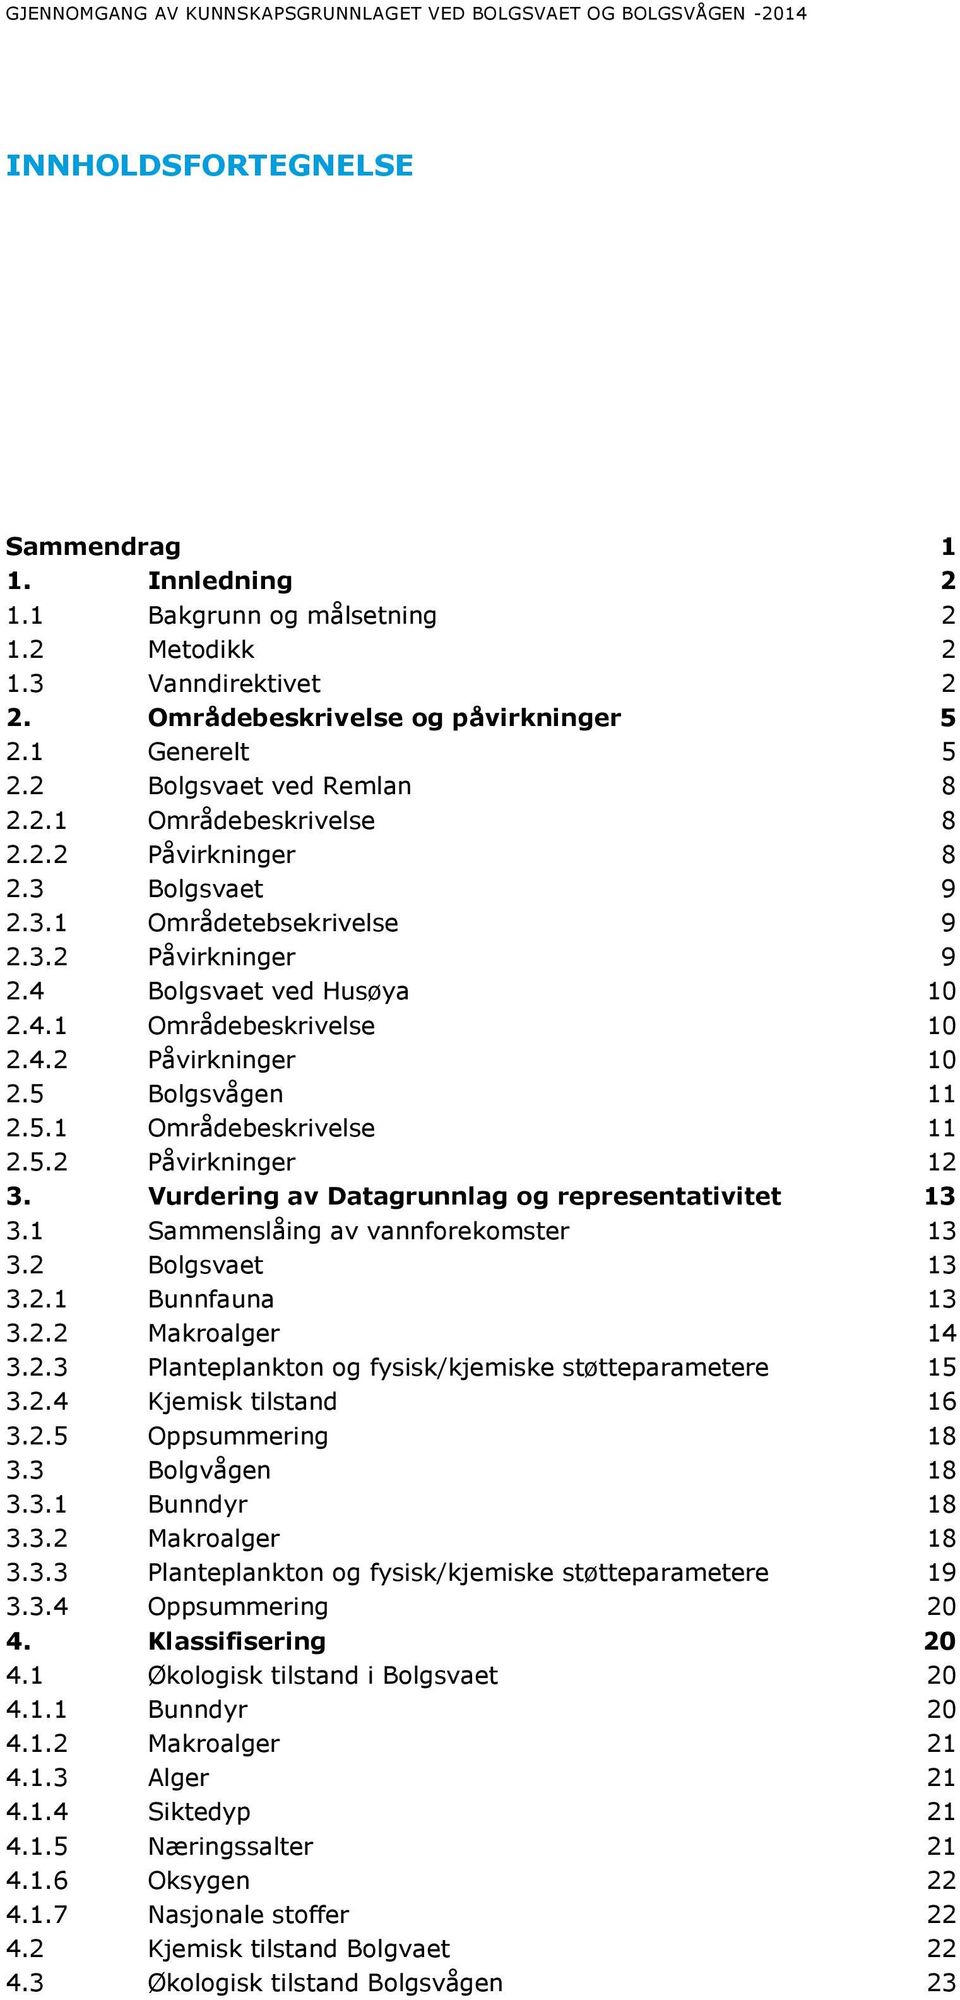 4 Bolgsvaet ved Husøya 10 2.4.1 Områdebeskrivelse 10 2.4.2 Påvirkninger 10 2.5 Bolgsvågen 11 2.5.1 Områdebeskrivelse 11 2.5.2 Påvirkninger 12 3. Vurdering av Datagrunnlag og representativitet 13 3.